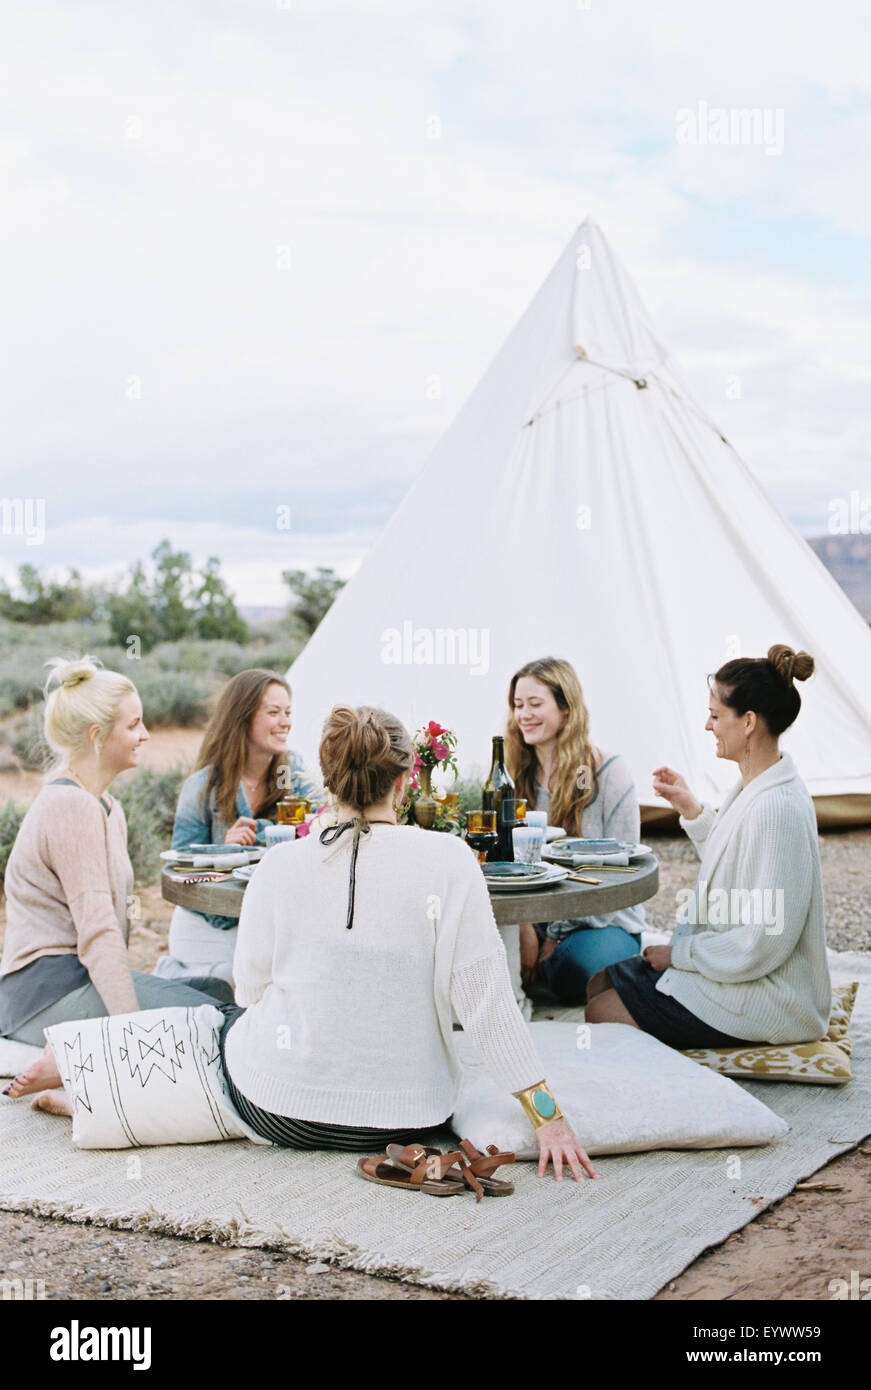 Grupo de mujeres disfrutando de una comida al aire libre en una tienda en el desierto. Foto de stock